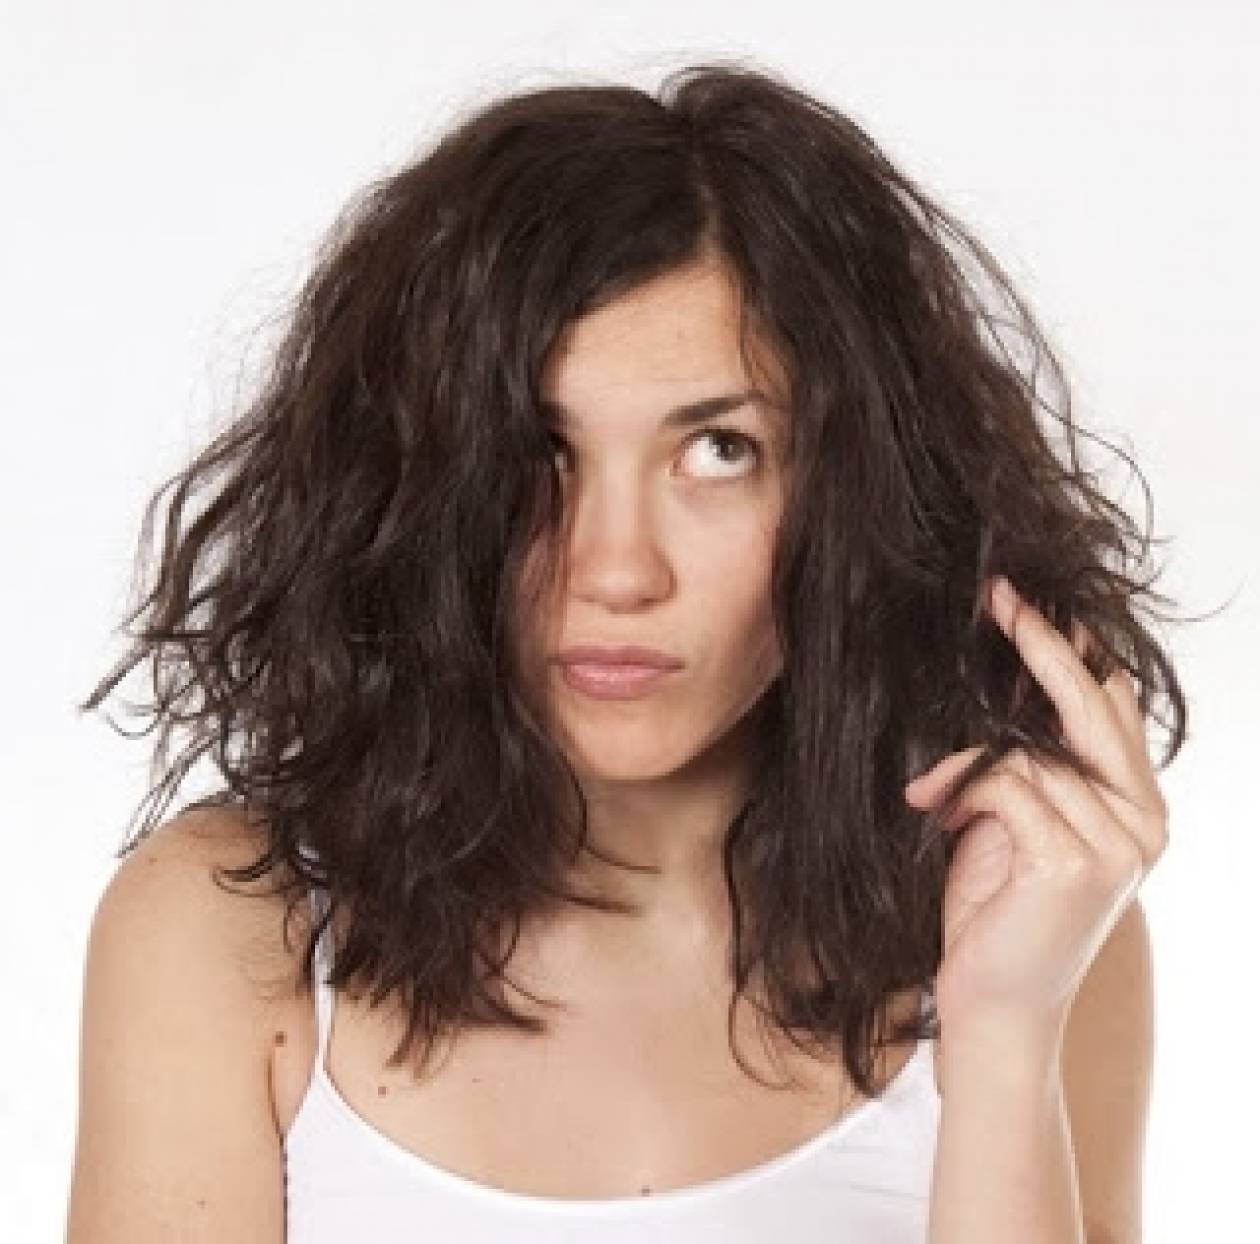 Αντιμετωπίζετε πρόβλημα με τα μαλλιά σας;